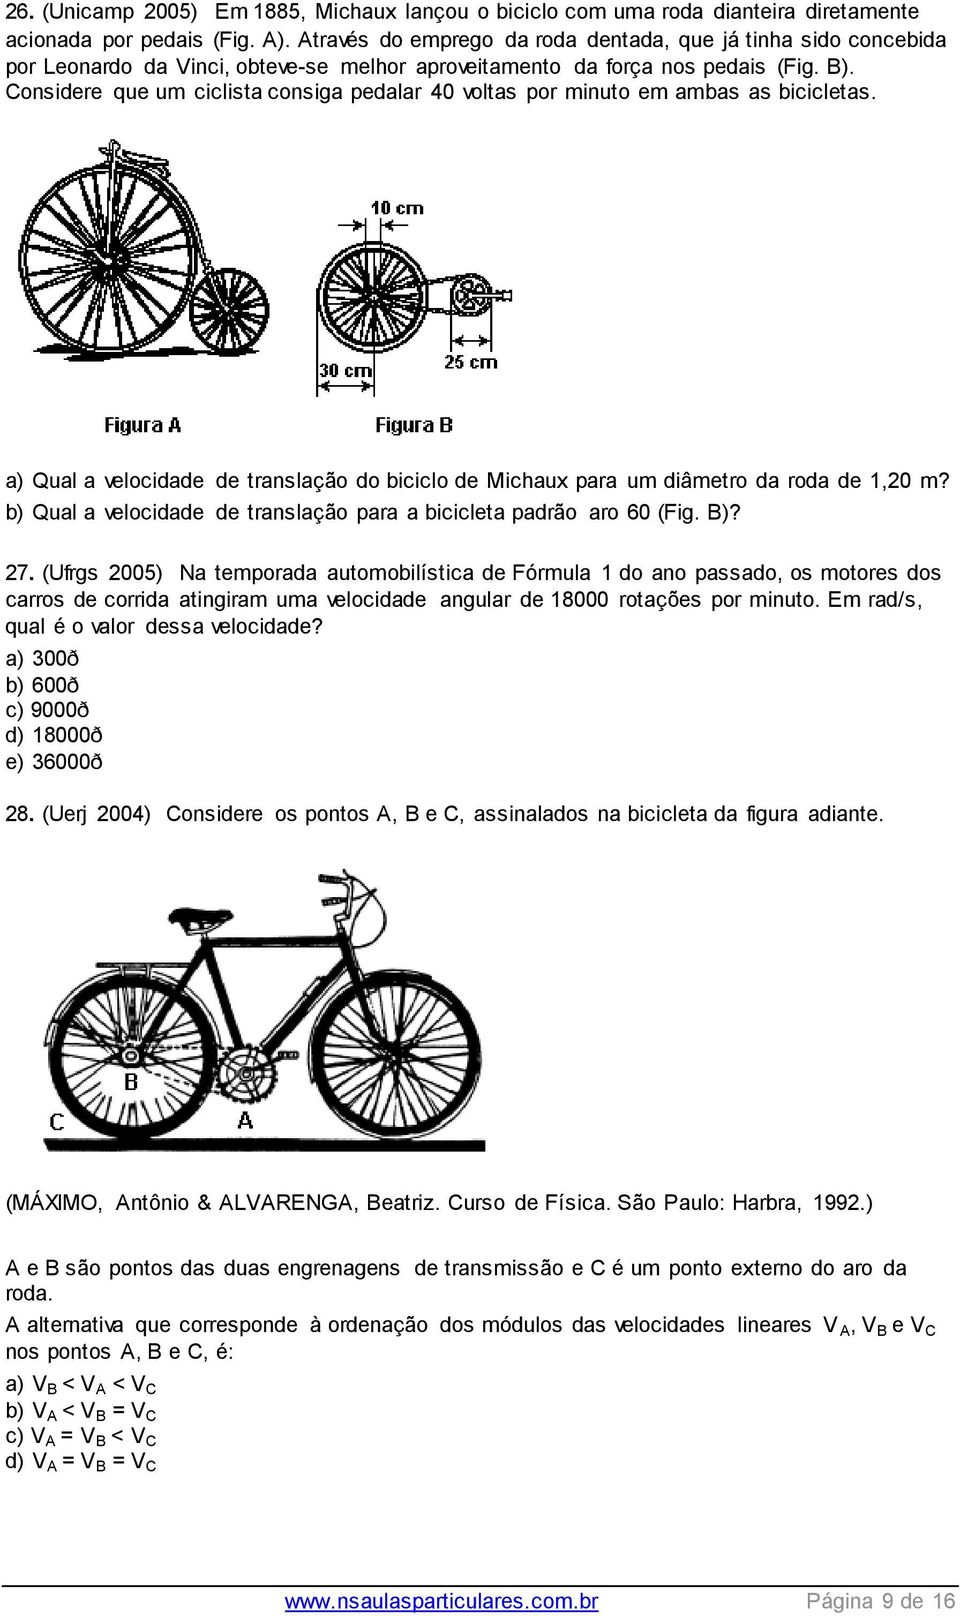 Considere que um ciclista consiga pedalar 40 voltas por minuto em ambas as bicicletas. a) Qual a velocidade de translação do biciclo de Michaux para um diâmetro da roda de 1,20 m?